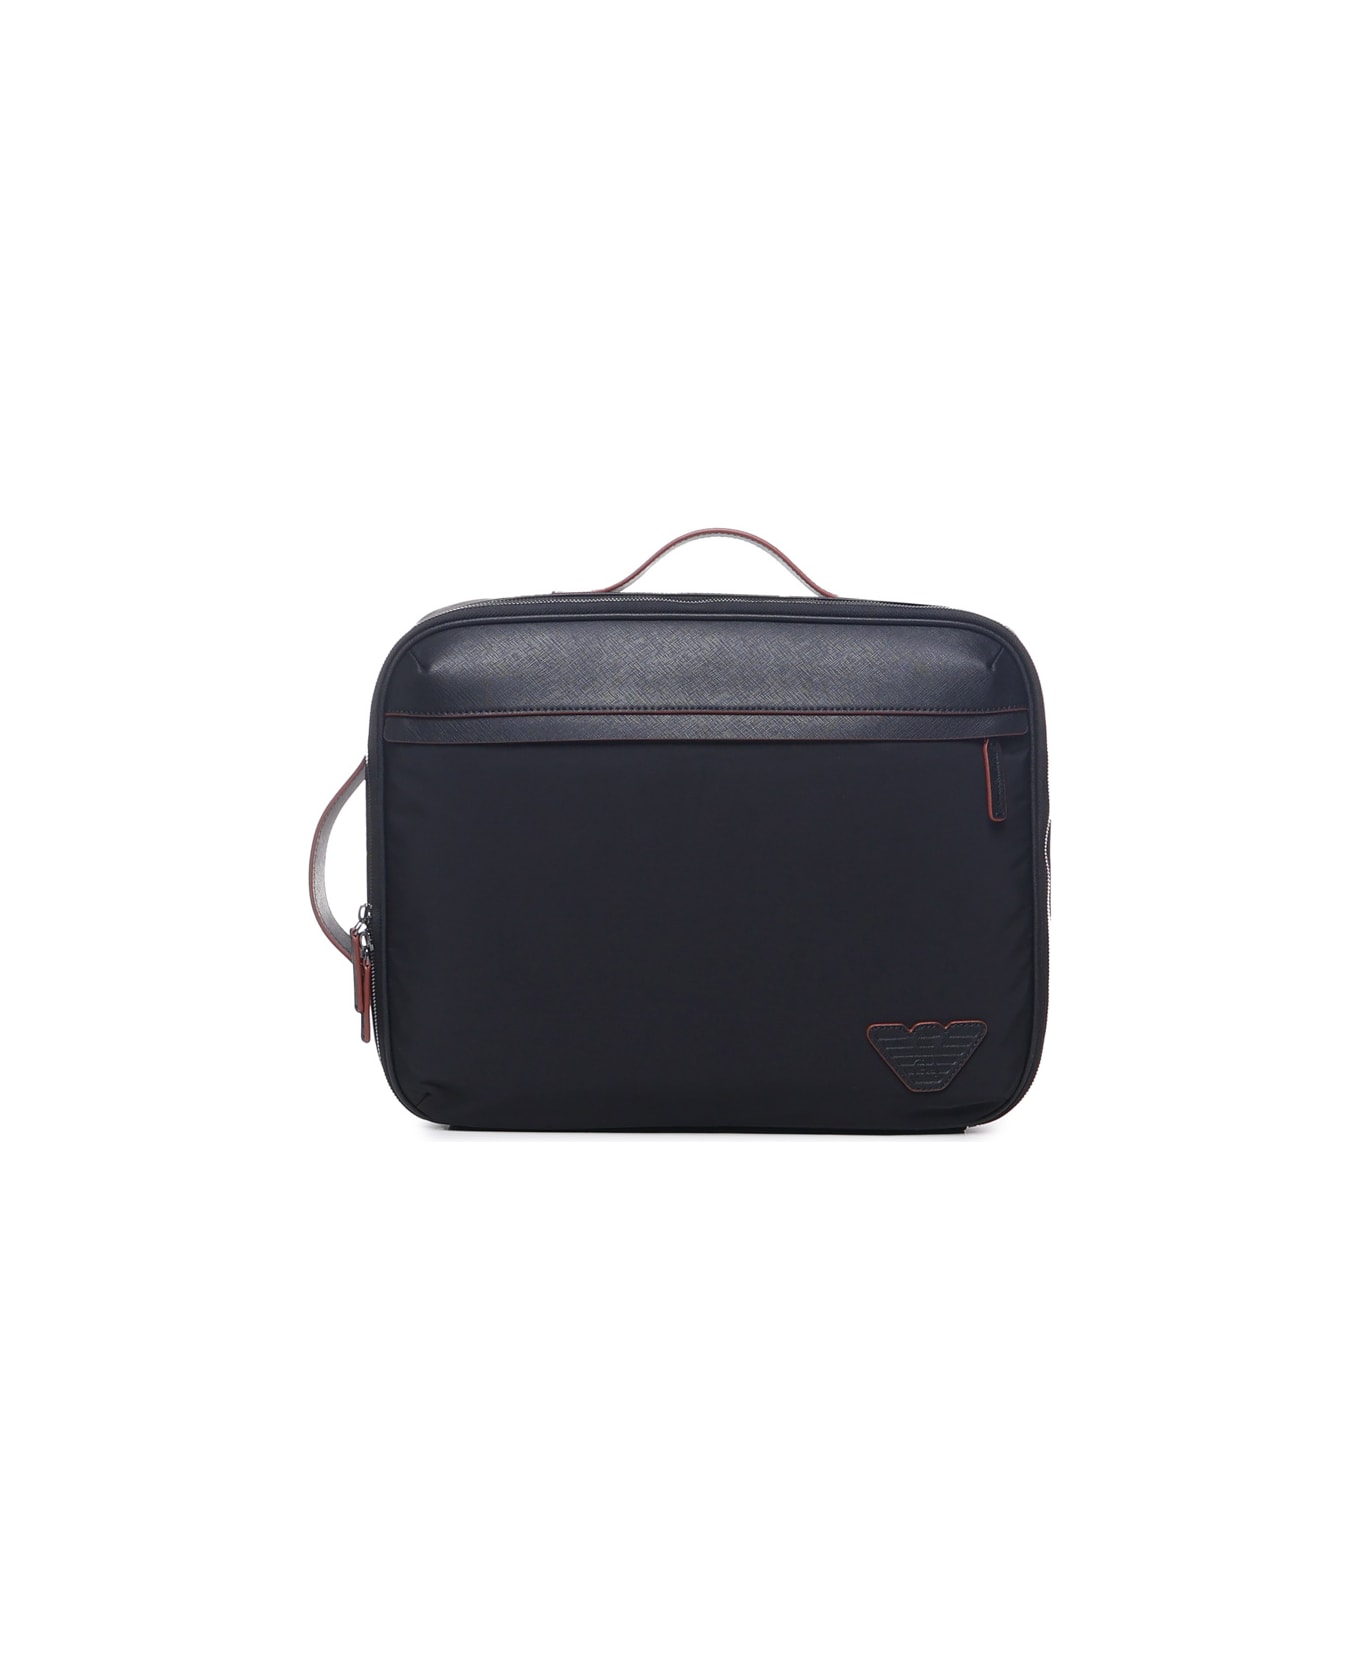 Giorgio Armani Business Bag With Shoulder Straps In Regenerated Saffiano And Recycled Nylon Giorgio Armani